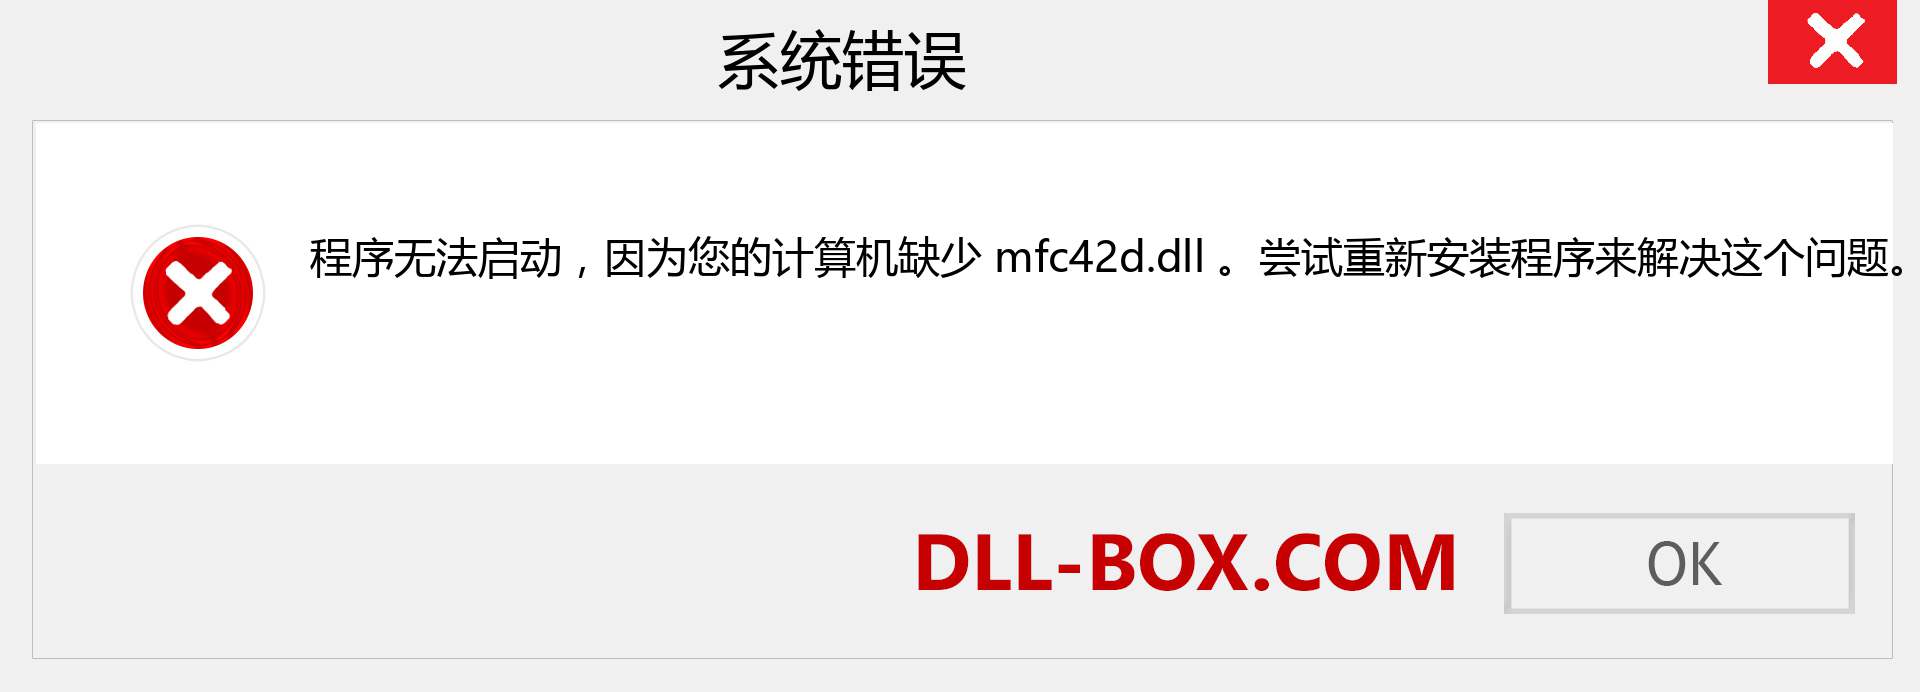 mfc42d.dll 文件丢失？。 适用于 Windows 7、8、10 的下载 - 修复 Windows、照片、图像上的 mfc42d dll 丢失错误